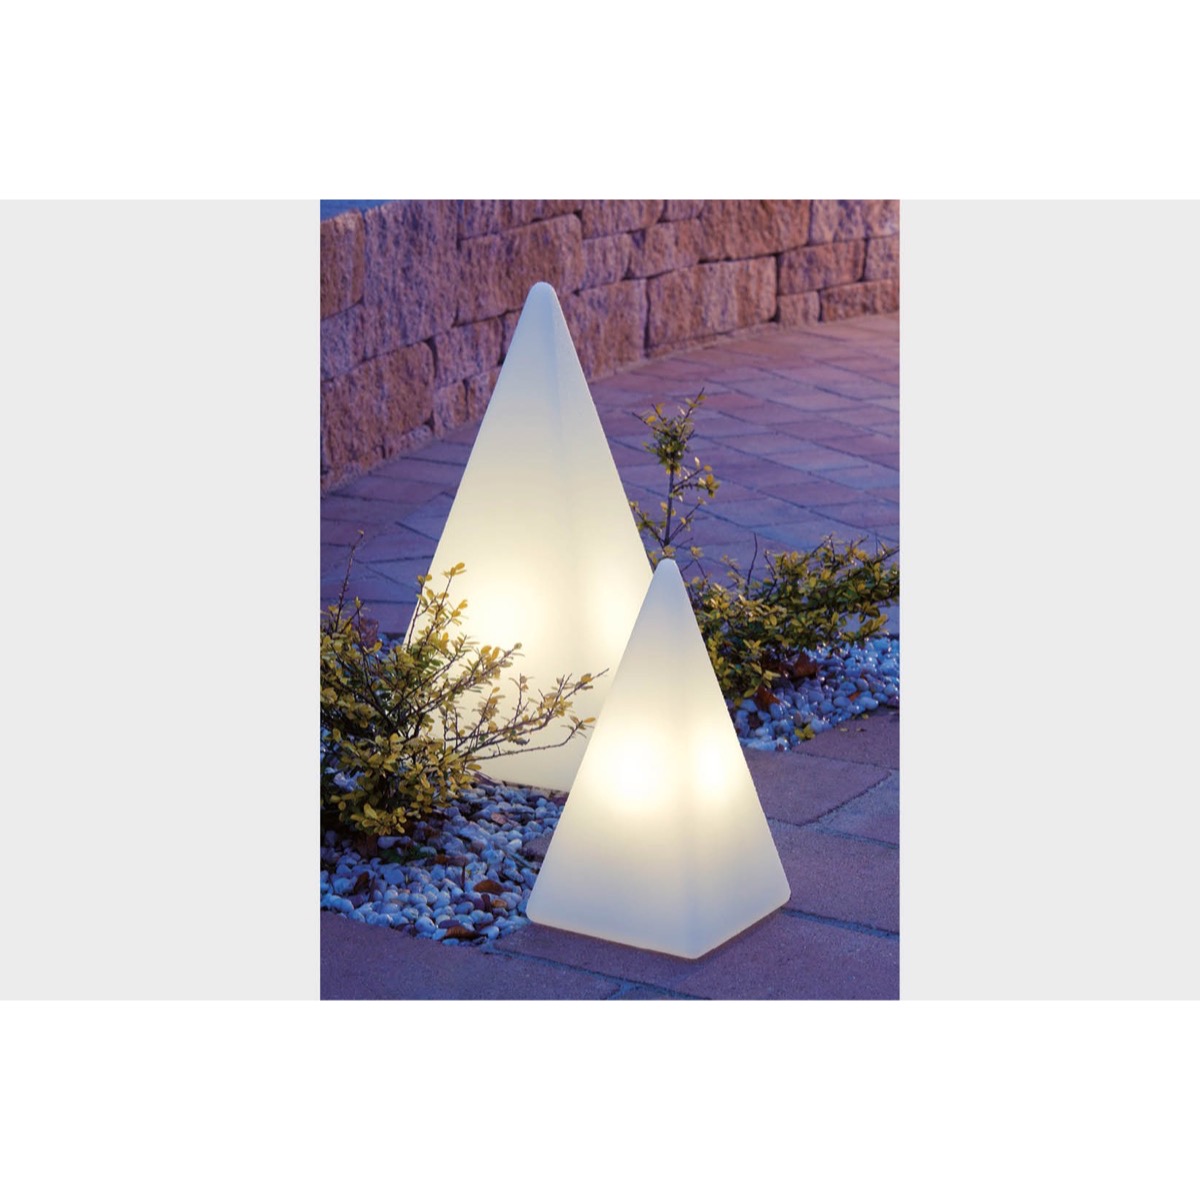 70605 Standleuchte Pyramide 54 cm der Firma EPSTEIN Design Leuchten